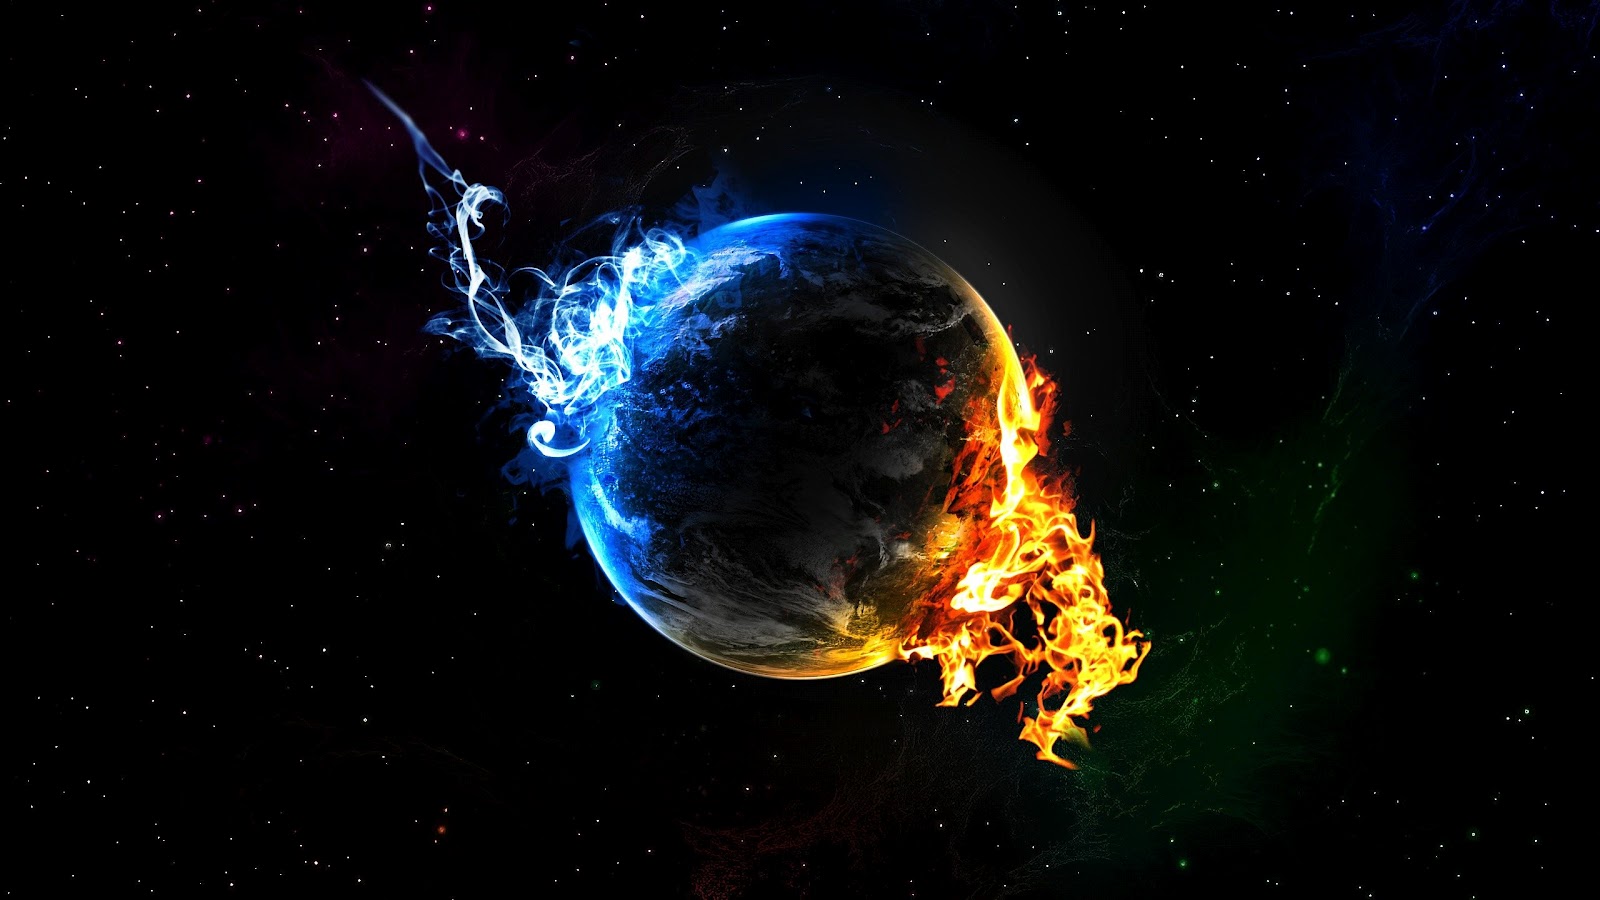 http://1.bp.blogspot.com/-QVsF209aS4I/UFykkpH2irI/AAAAAAAAEhY/Hyry8a6QLpI/s1600/earth-between-fire-and-ice-2560x1440.jpg